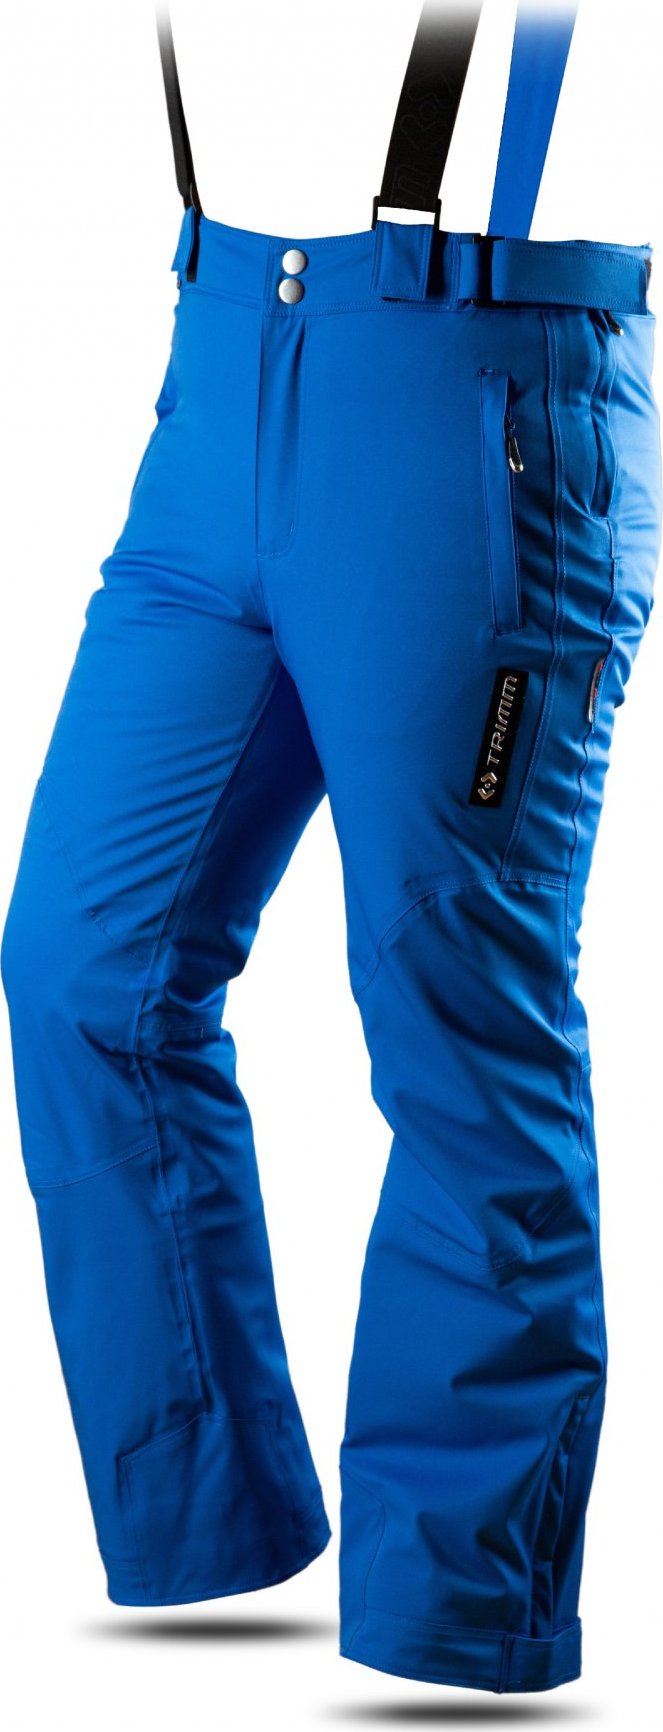 Pánské lyžařské kalhoty TRIMM Rider modré Velikost: S, Barva: jeans blue